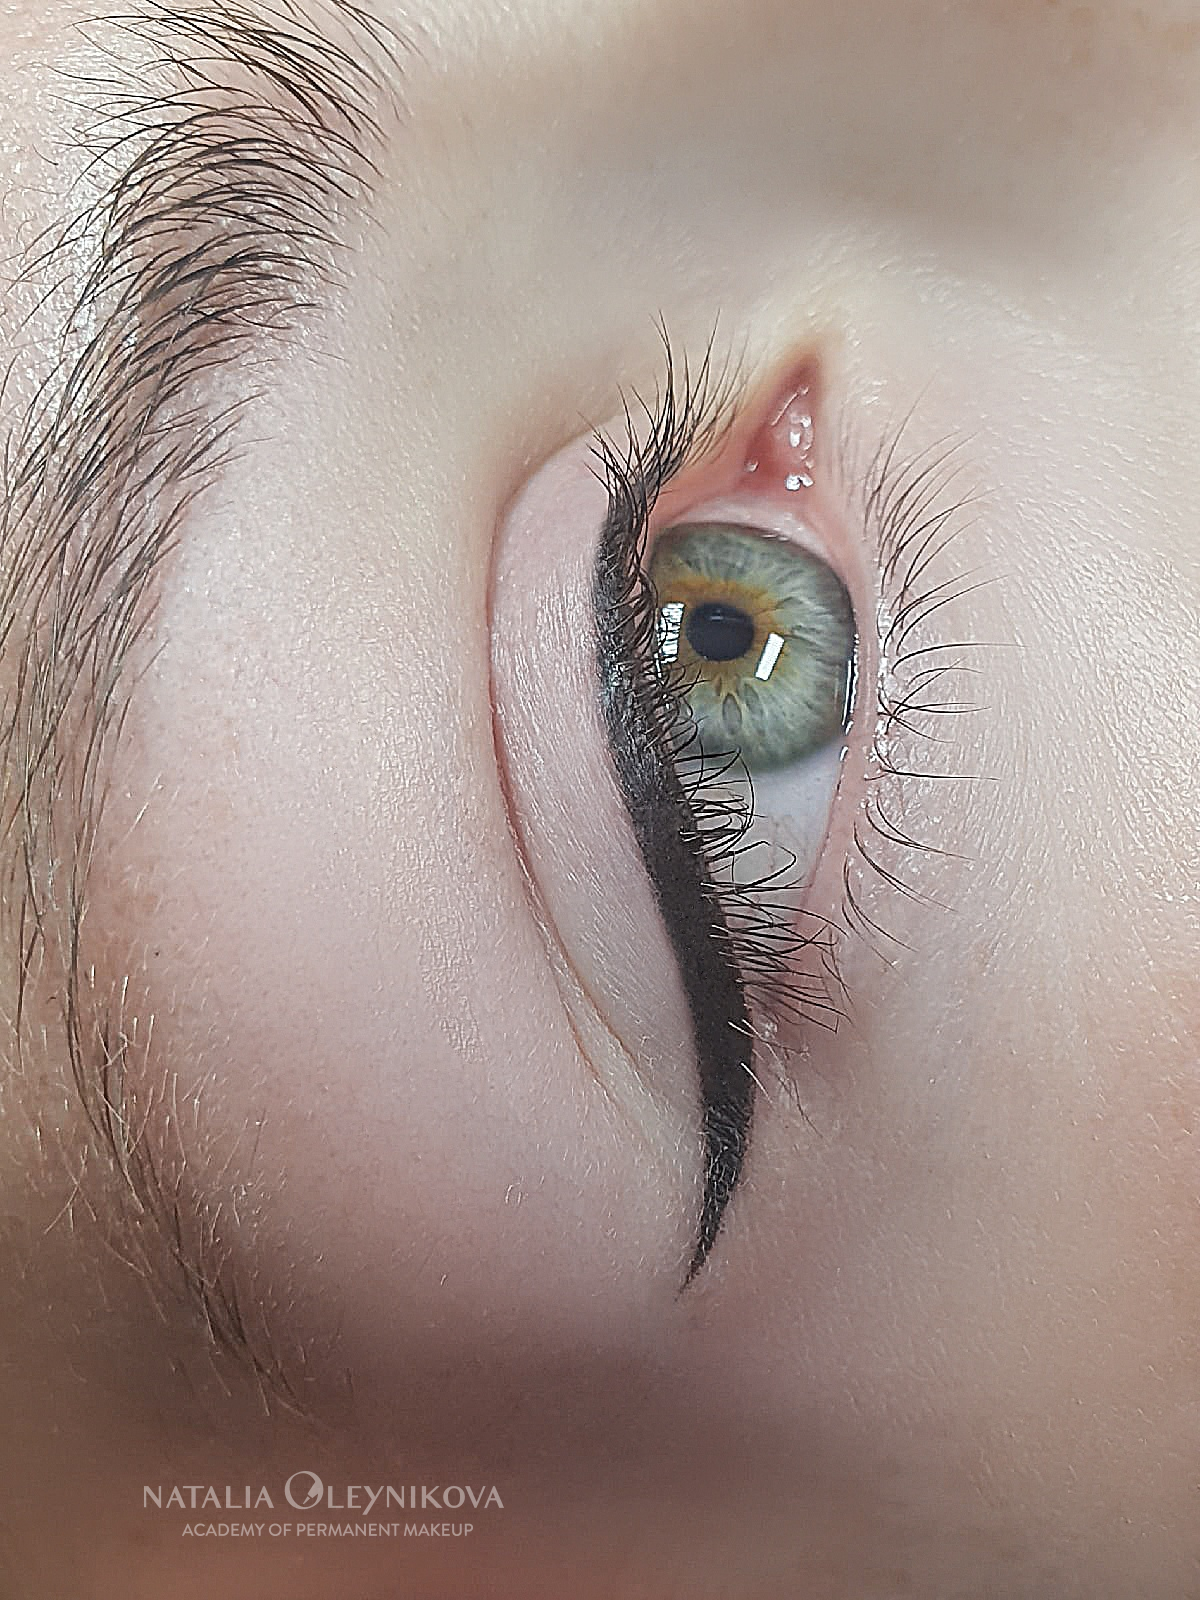 Татуаж глаз. Классическая стрелка 27102020 © Академия татуажа Натальи Олейниковой